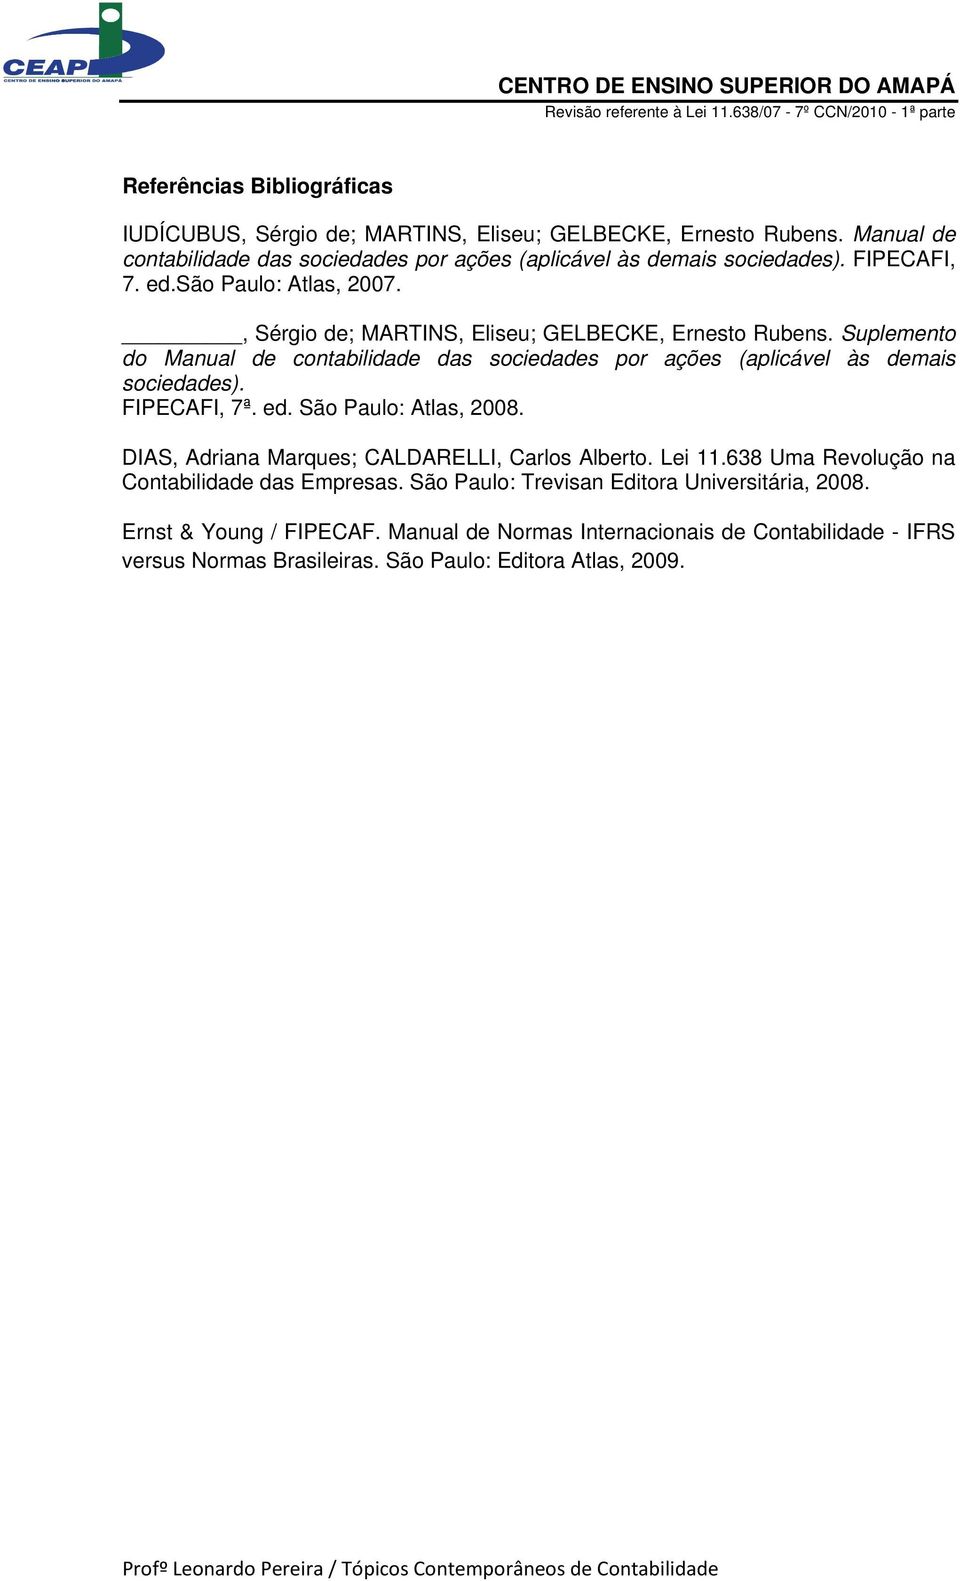 Suplemento do Manual de contabilidade das sociedades por ações (aplicável às demais sociedades). FIPECAFI, 7ª. ed. São Paulo: Atlas, 2008.